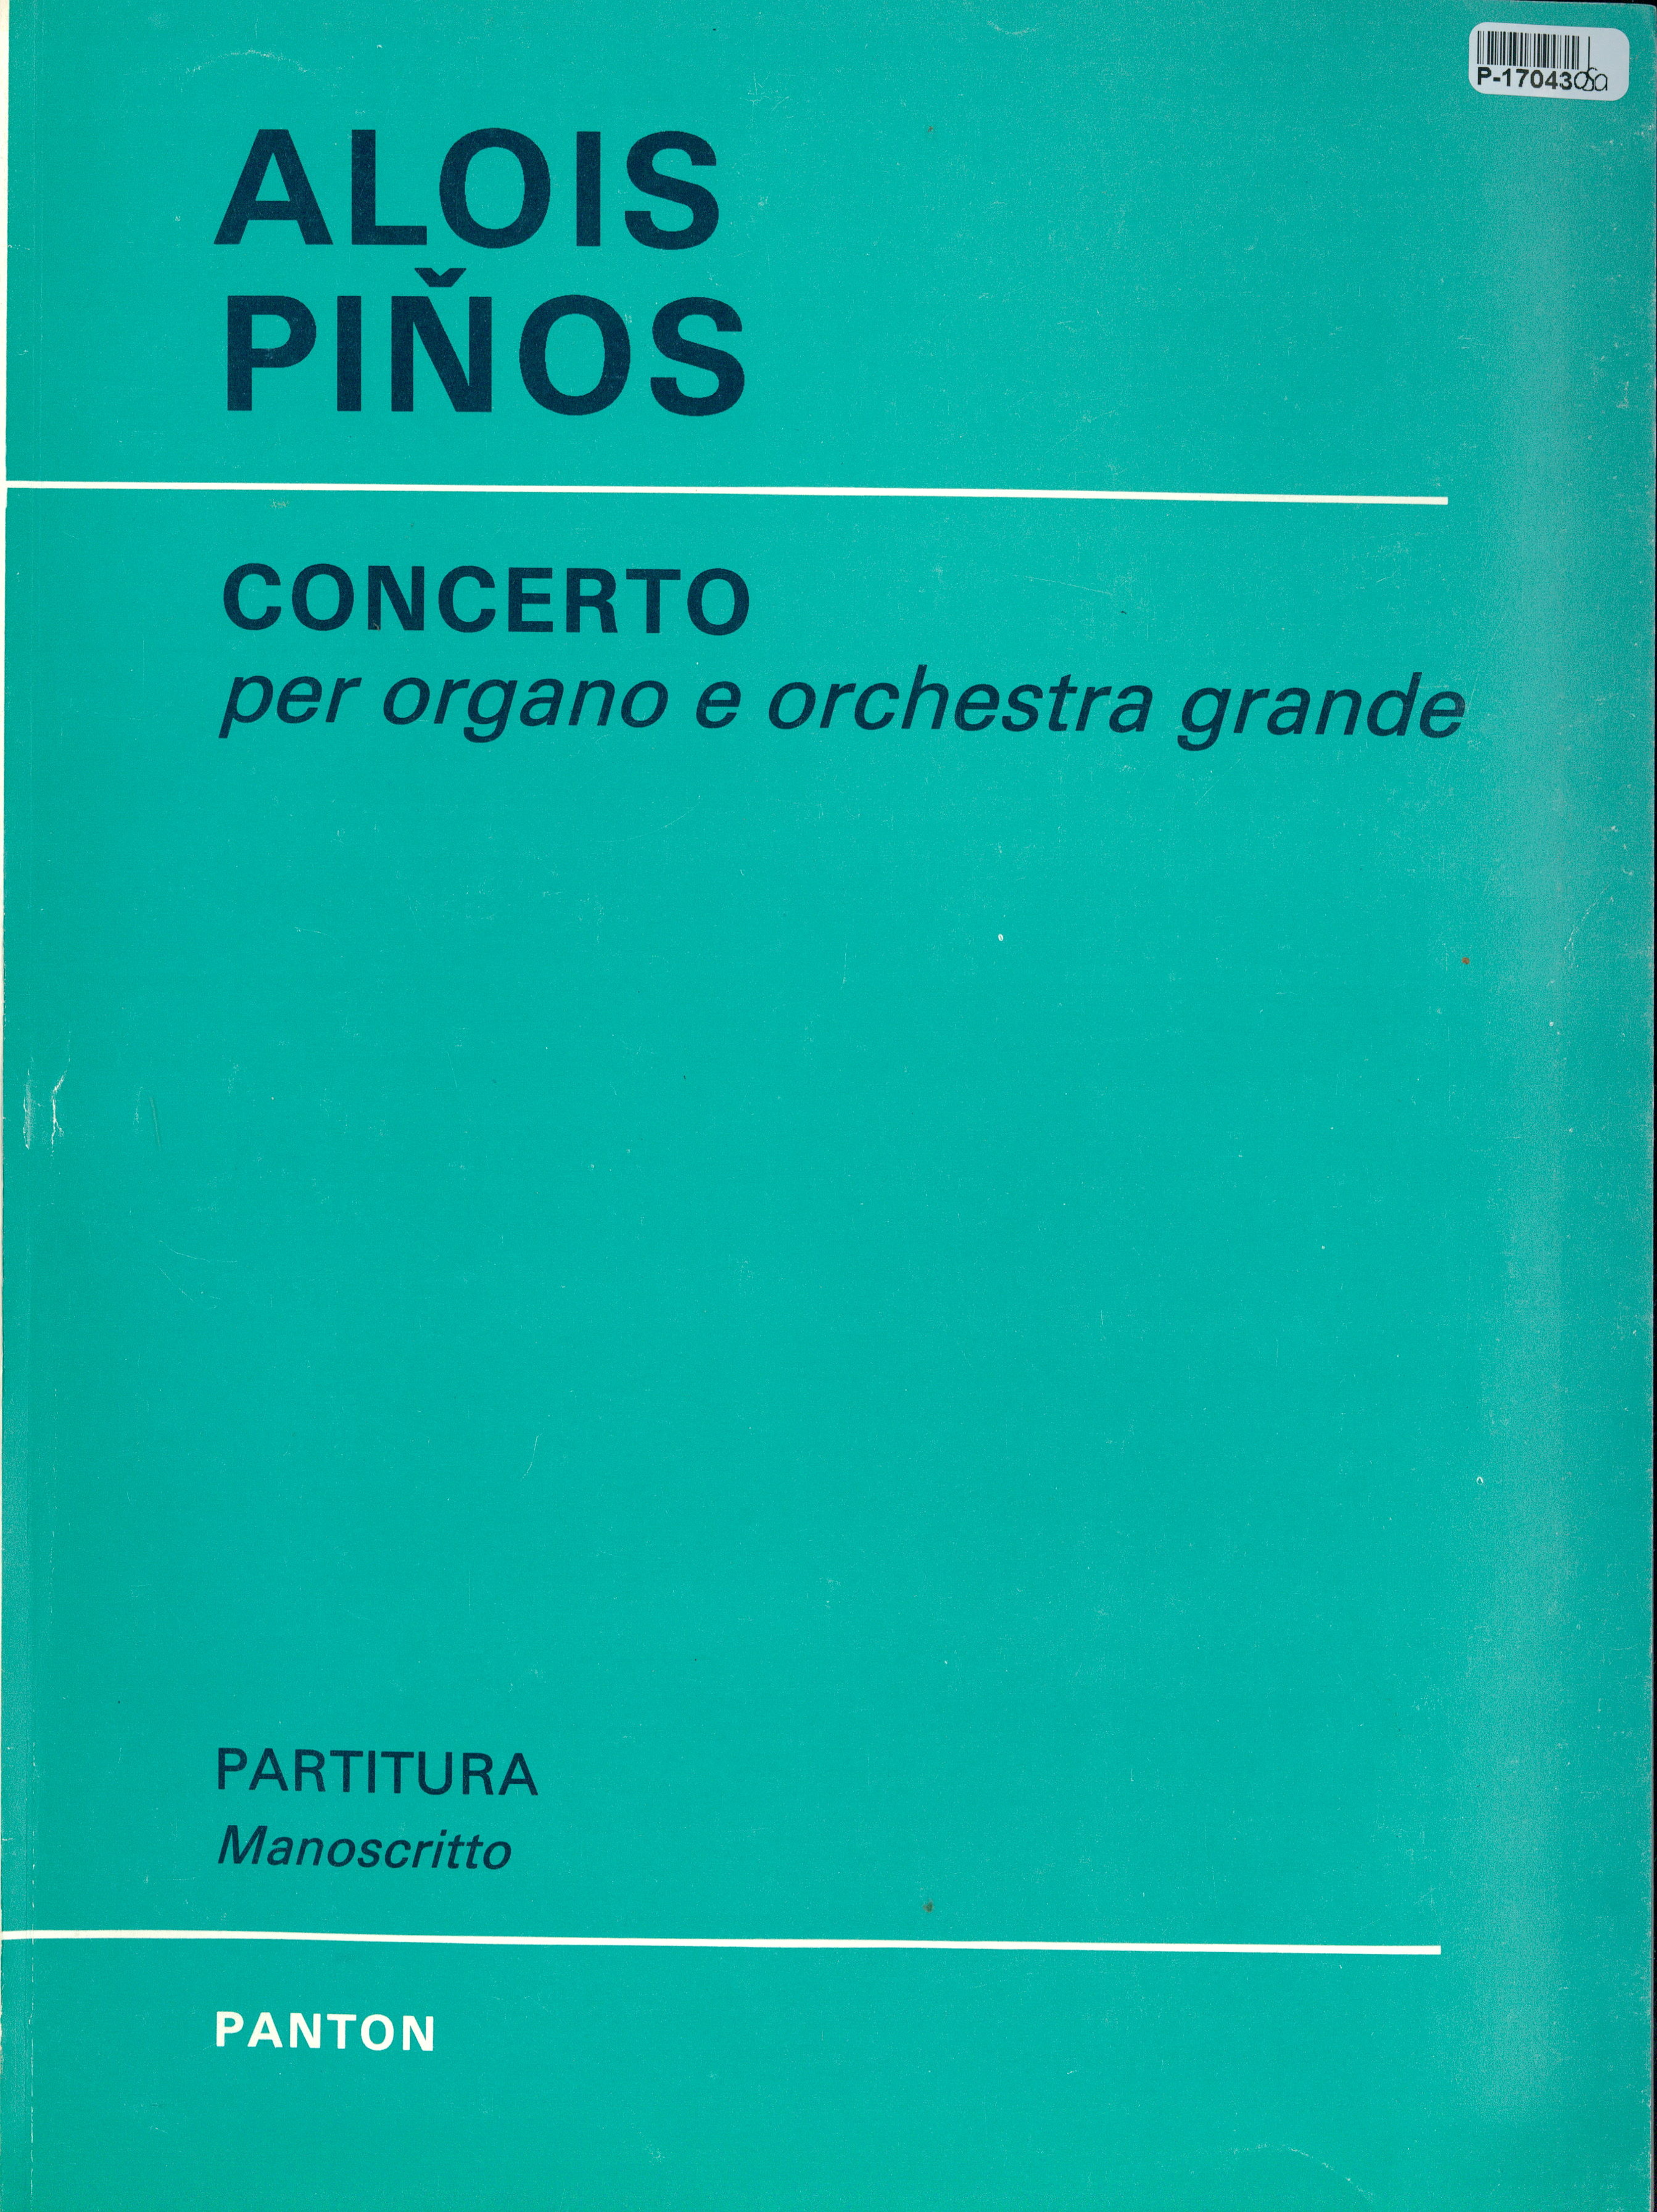 Concerto per organo e orchestra grande